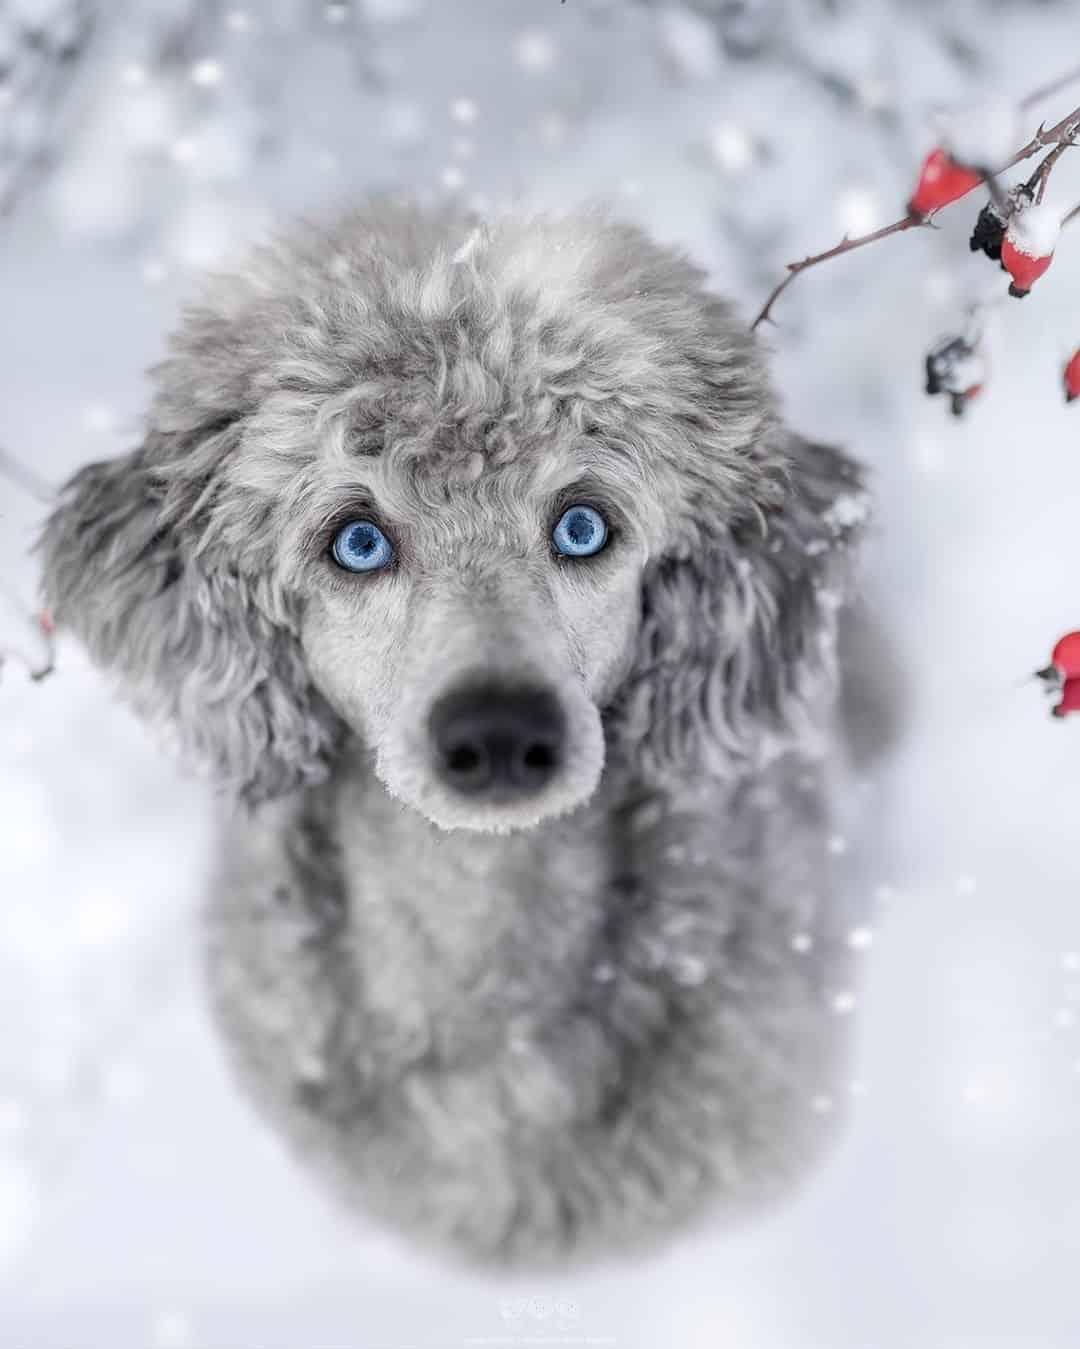 beautiful poodle dog with blue eyes